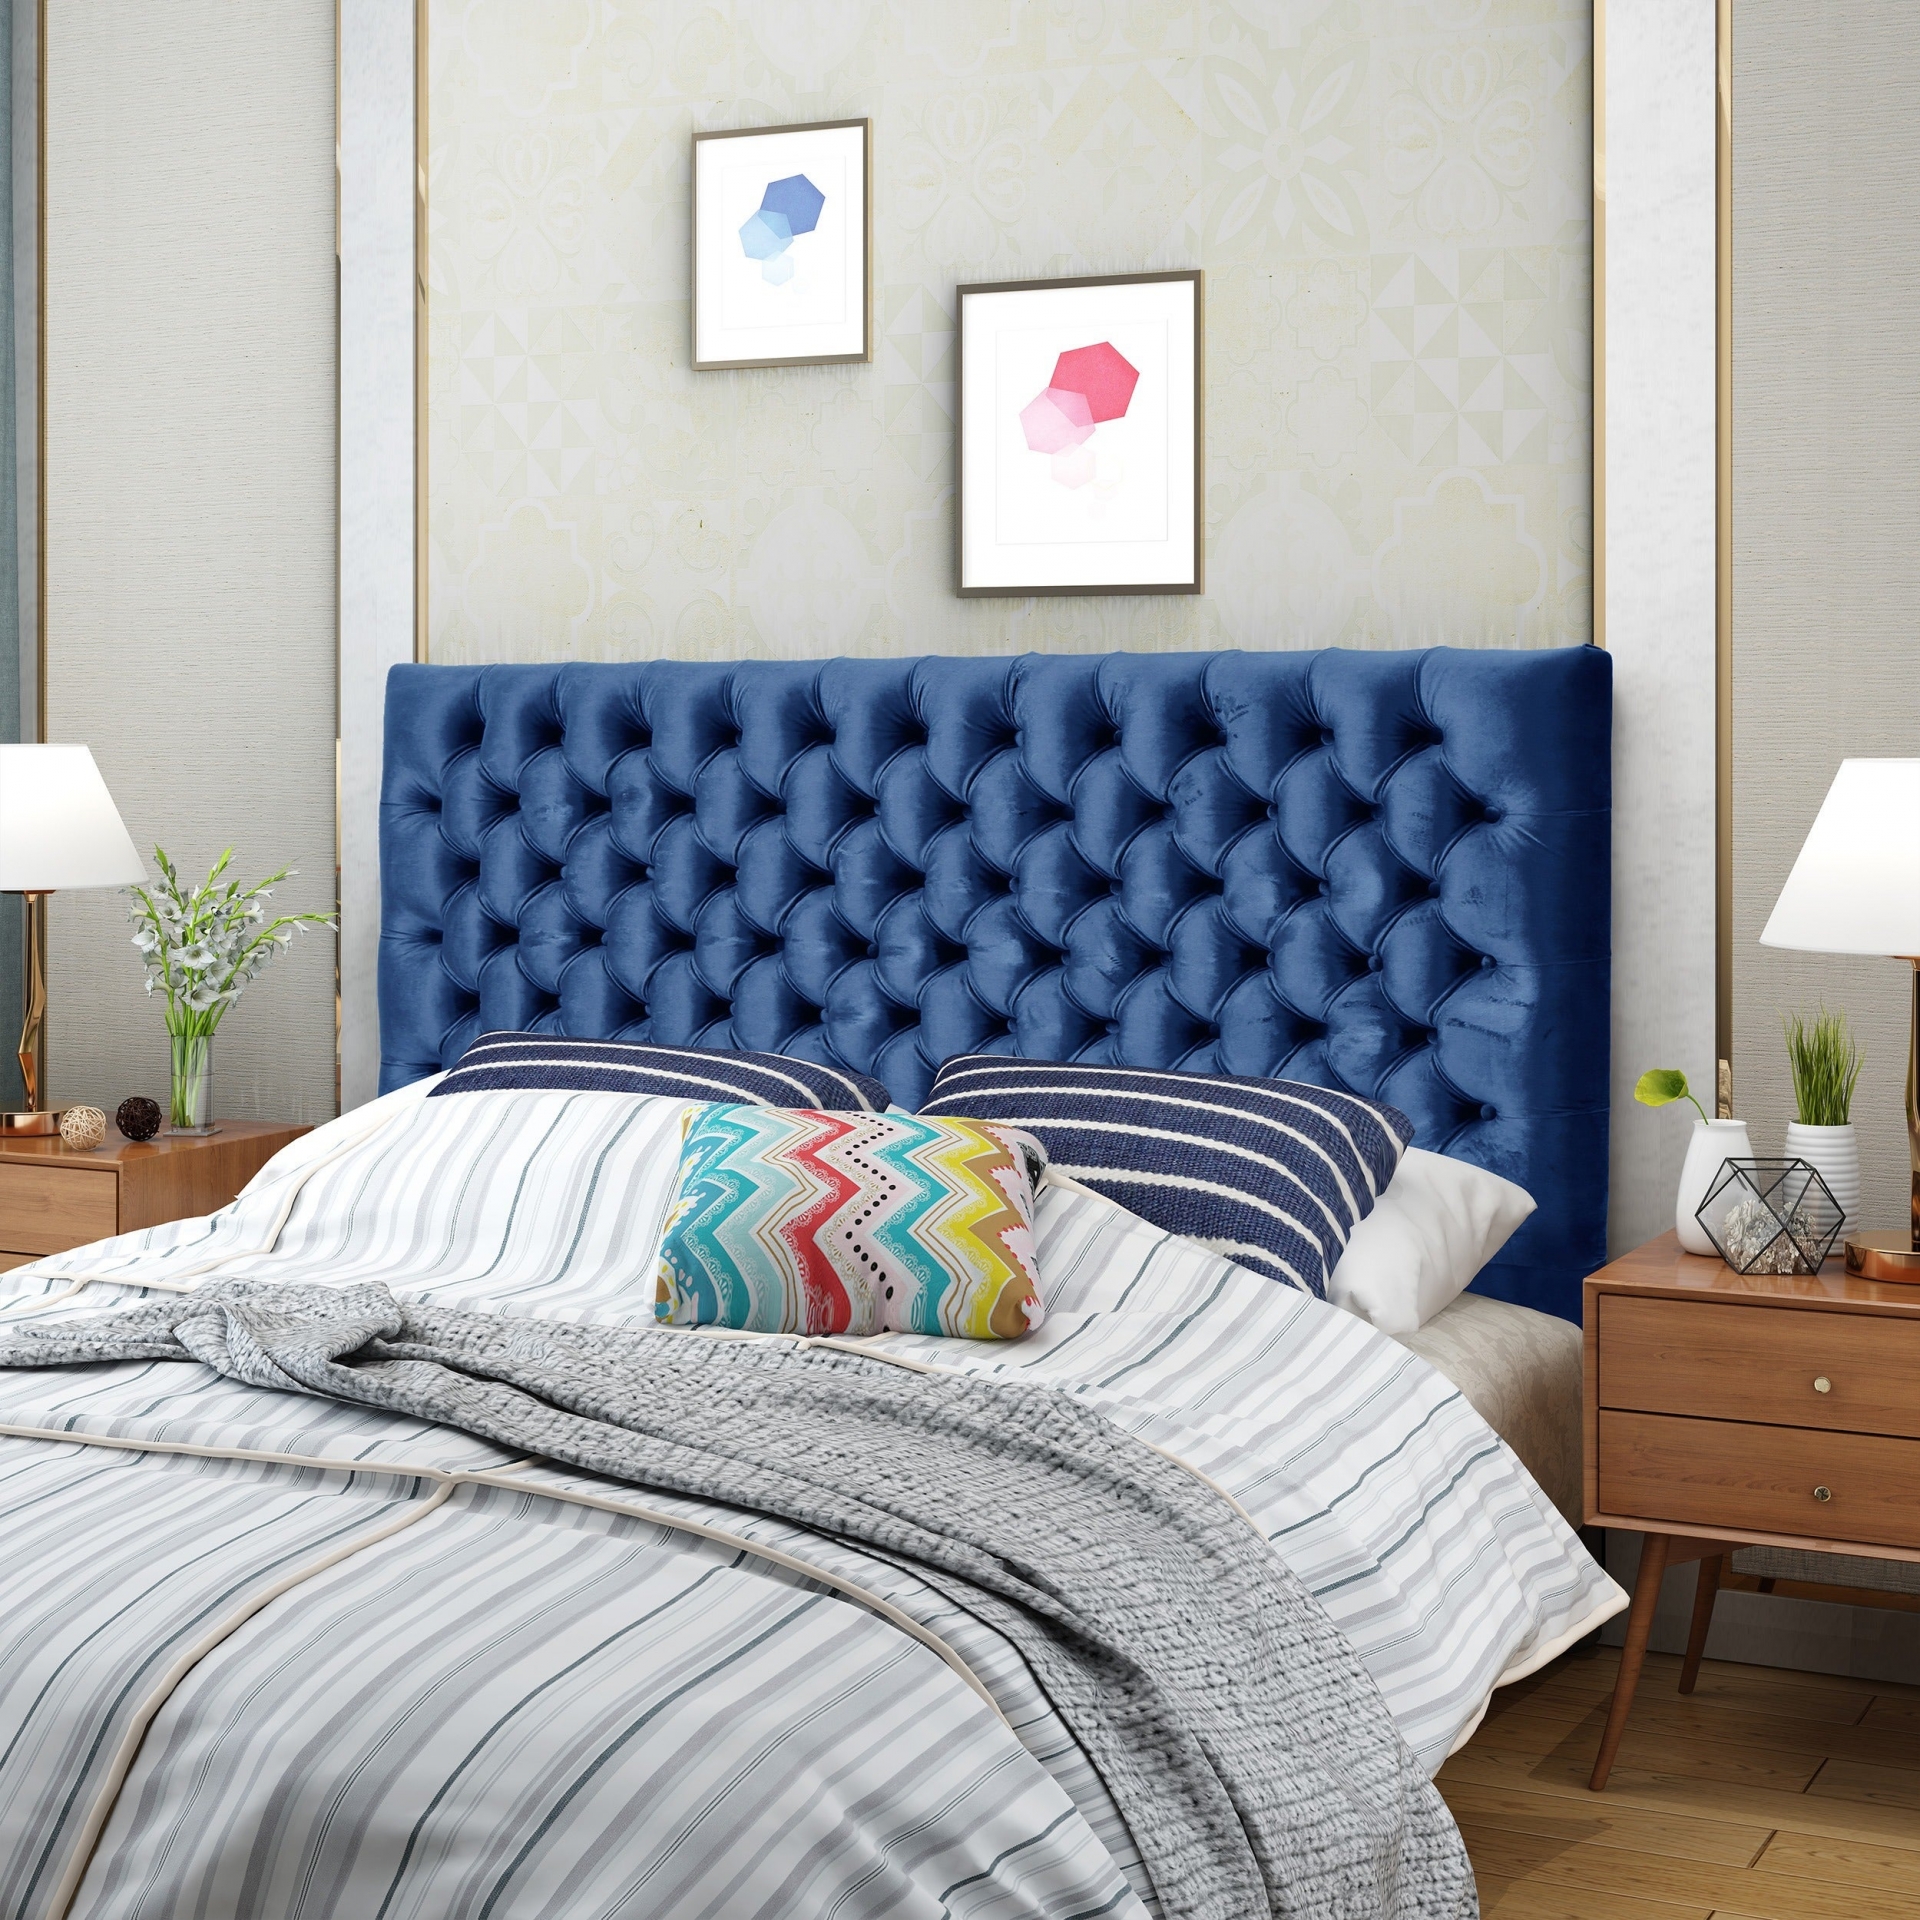 Đầu giường chần bông bọc vải nhung màu xanh lam đậm tạo nên sự tương phản mạnh mẽ và sang trọng vô cùng.